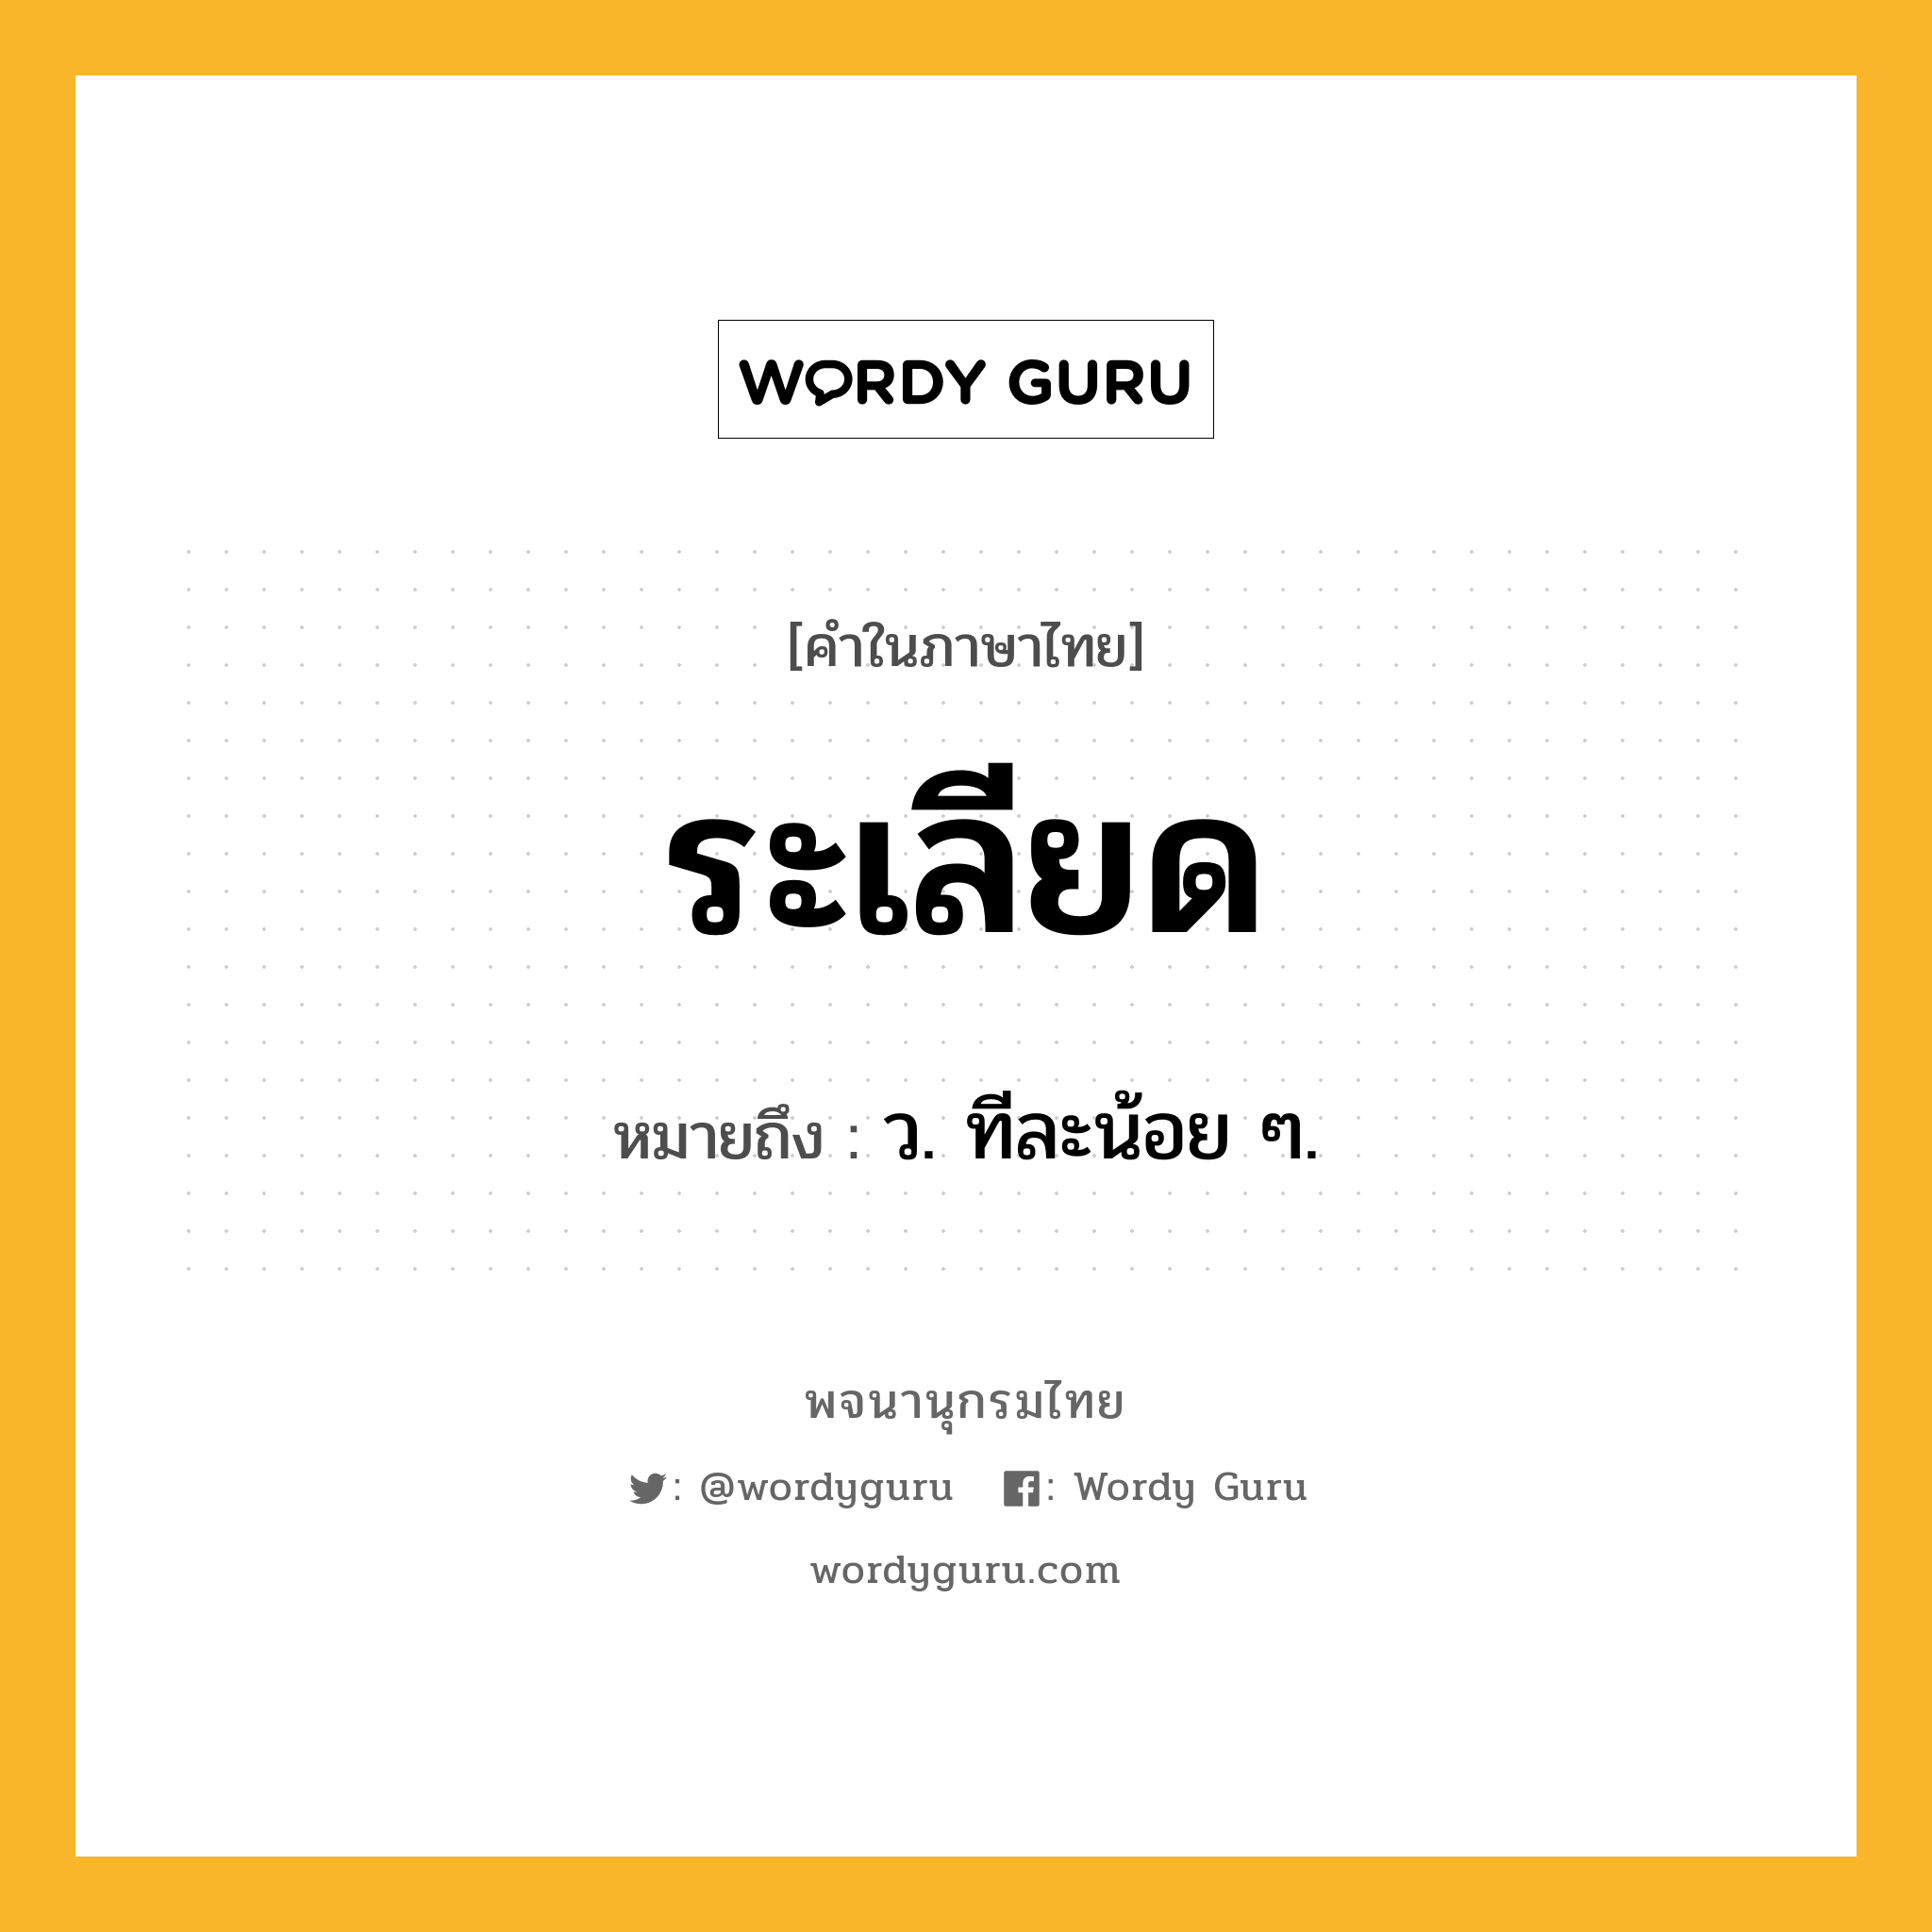 ระเลียด หมายถึงอะไร?, คำในภาษาไทย ระเลียด หมายถึง ว. ทีละน้อย ๆ.